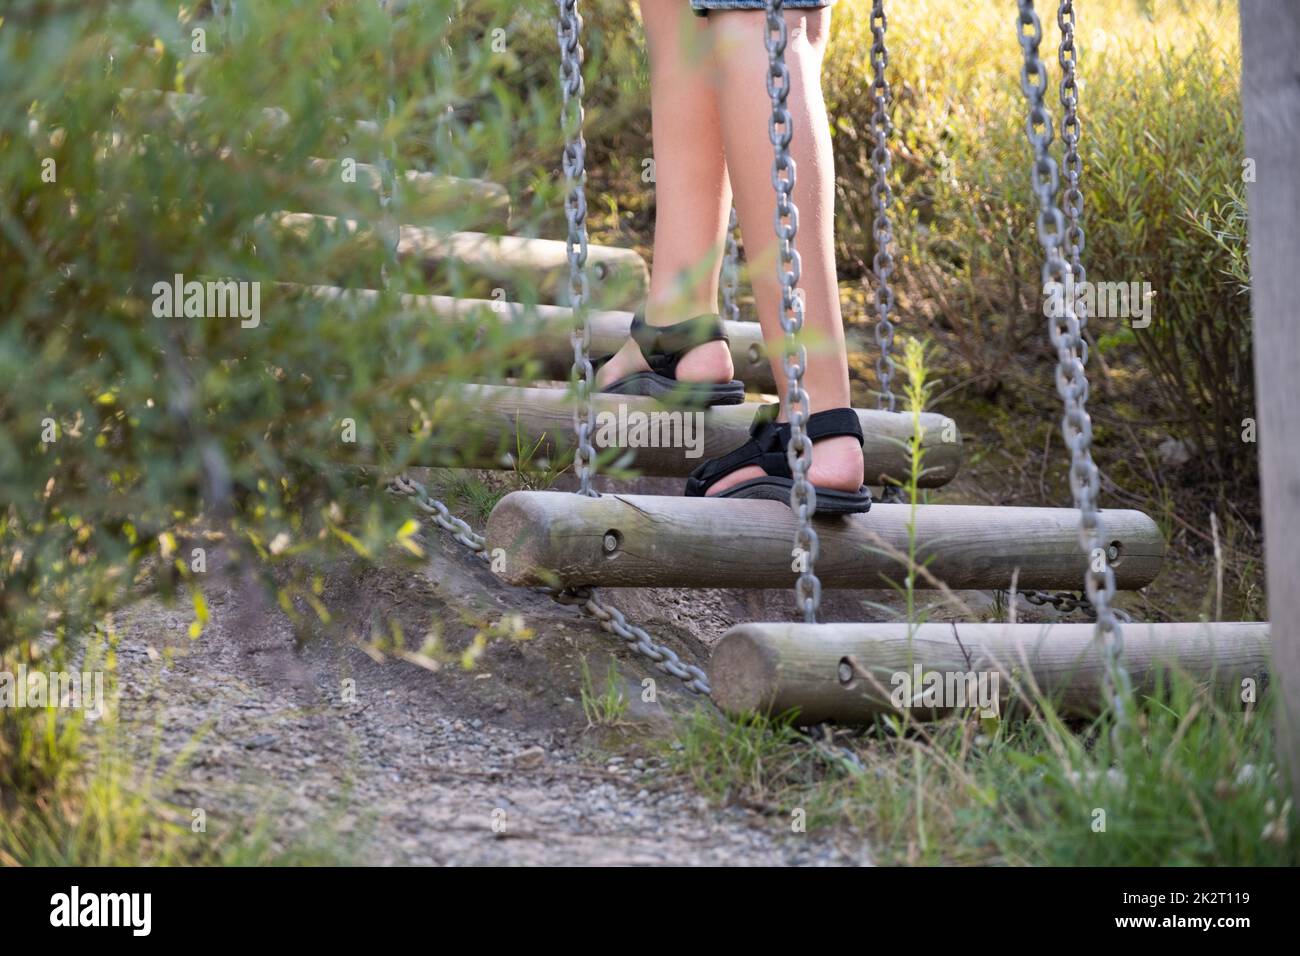 Das junge kaukasische Kind spielt auf dem Spielplatz und klettert im Seilpark auf eine Holzleiter. Stockfoto